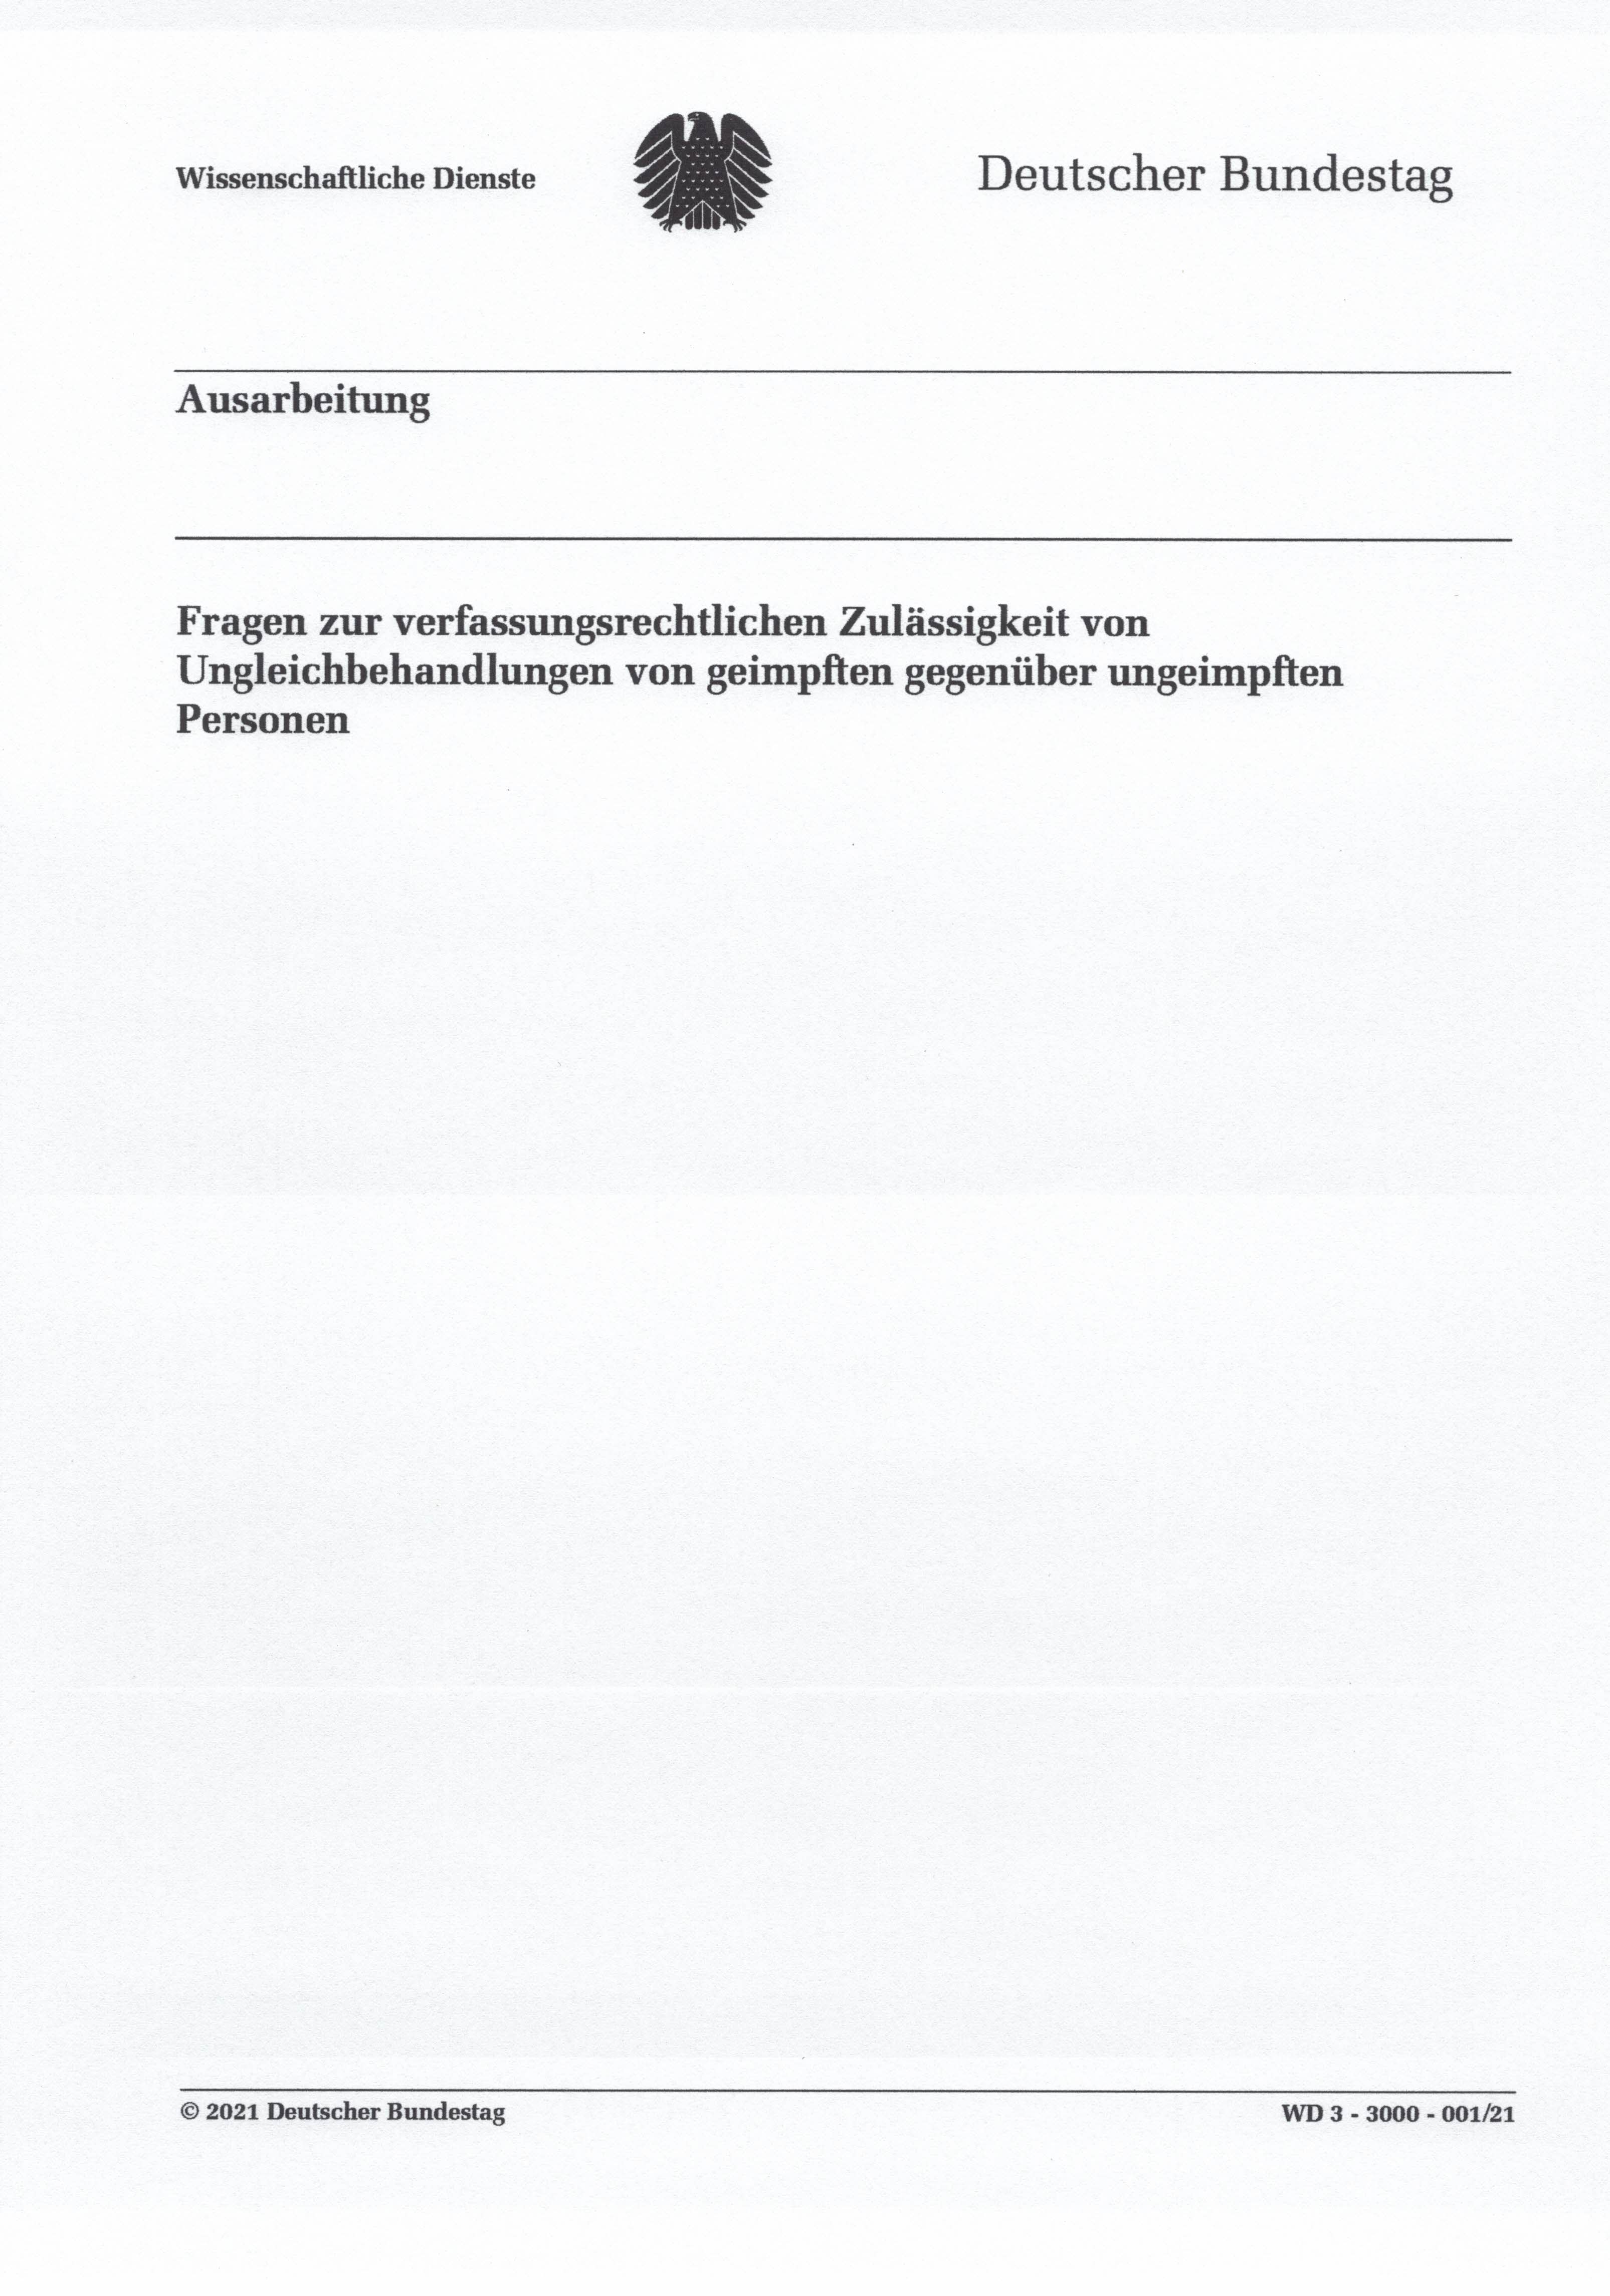 2021 09 06 Ausarbeitung Bundestag Ungleichbehandlung geimpfte vs ungeimpfte Auszge